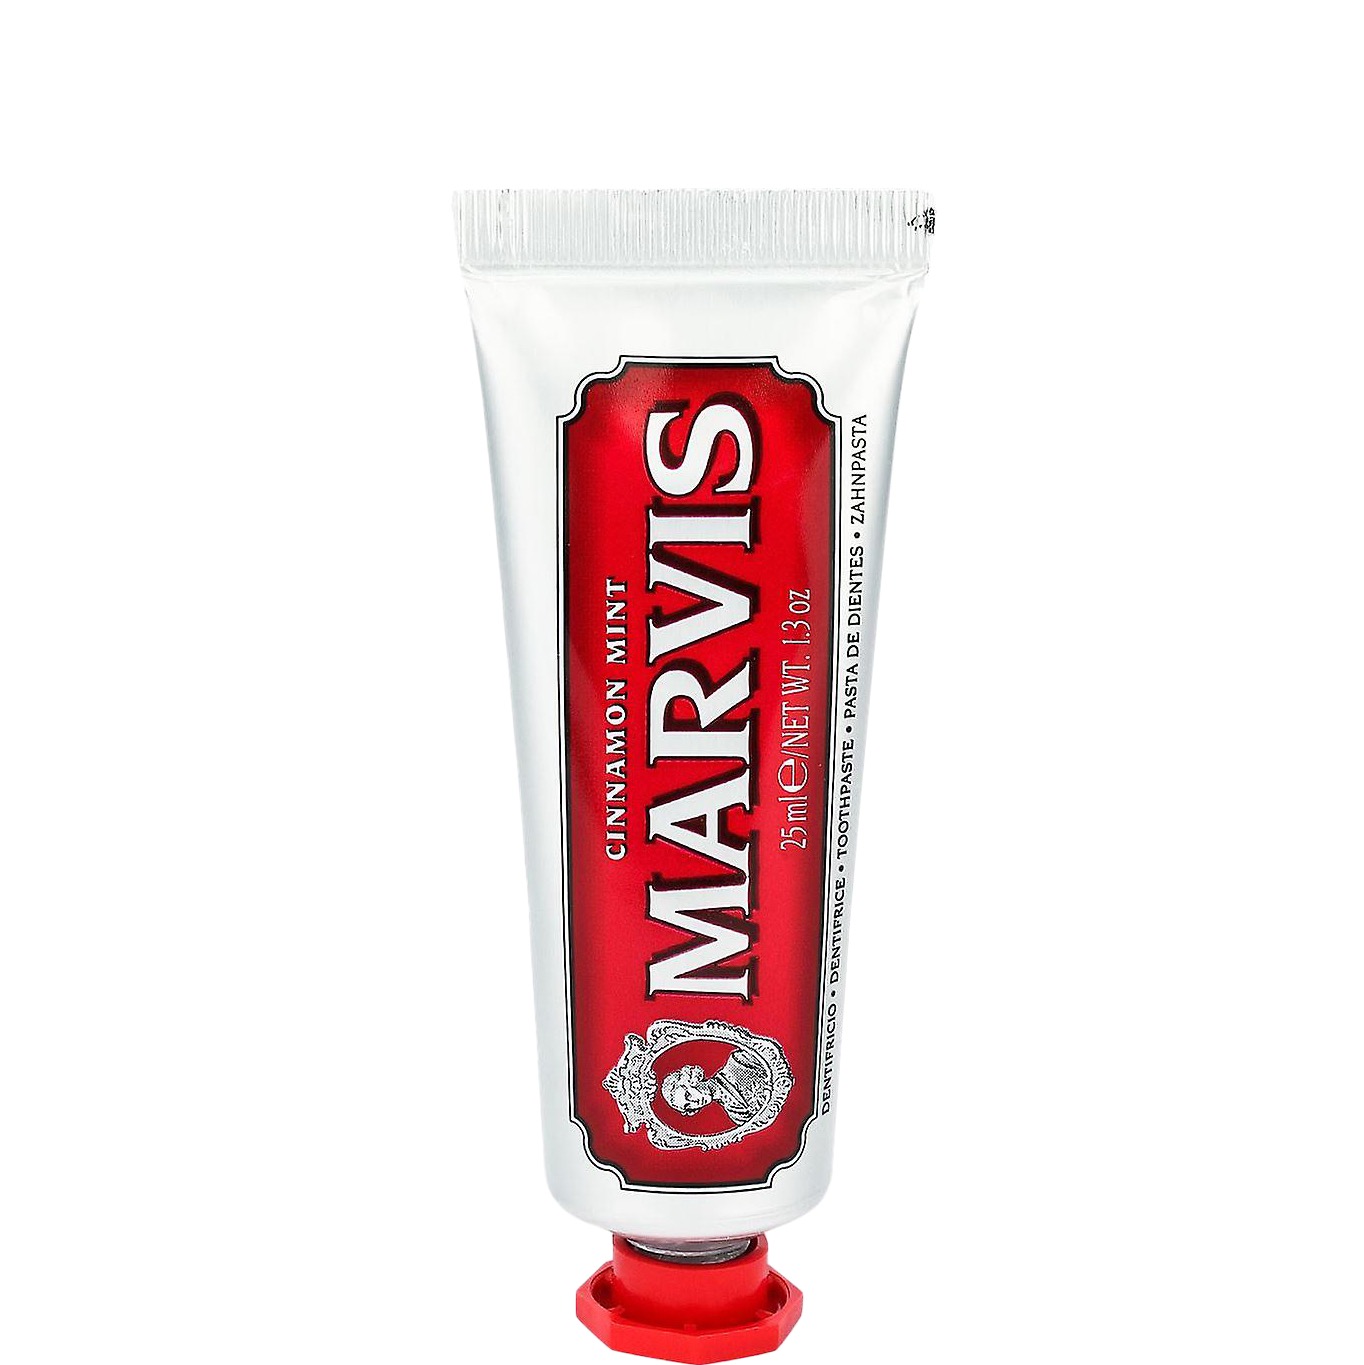 Marvis Tandpasta Cinnamon mint 25ml - 1.1 - MAR-411096